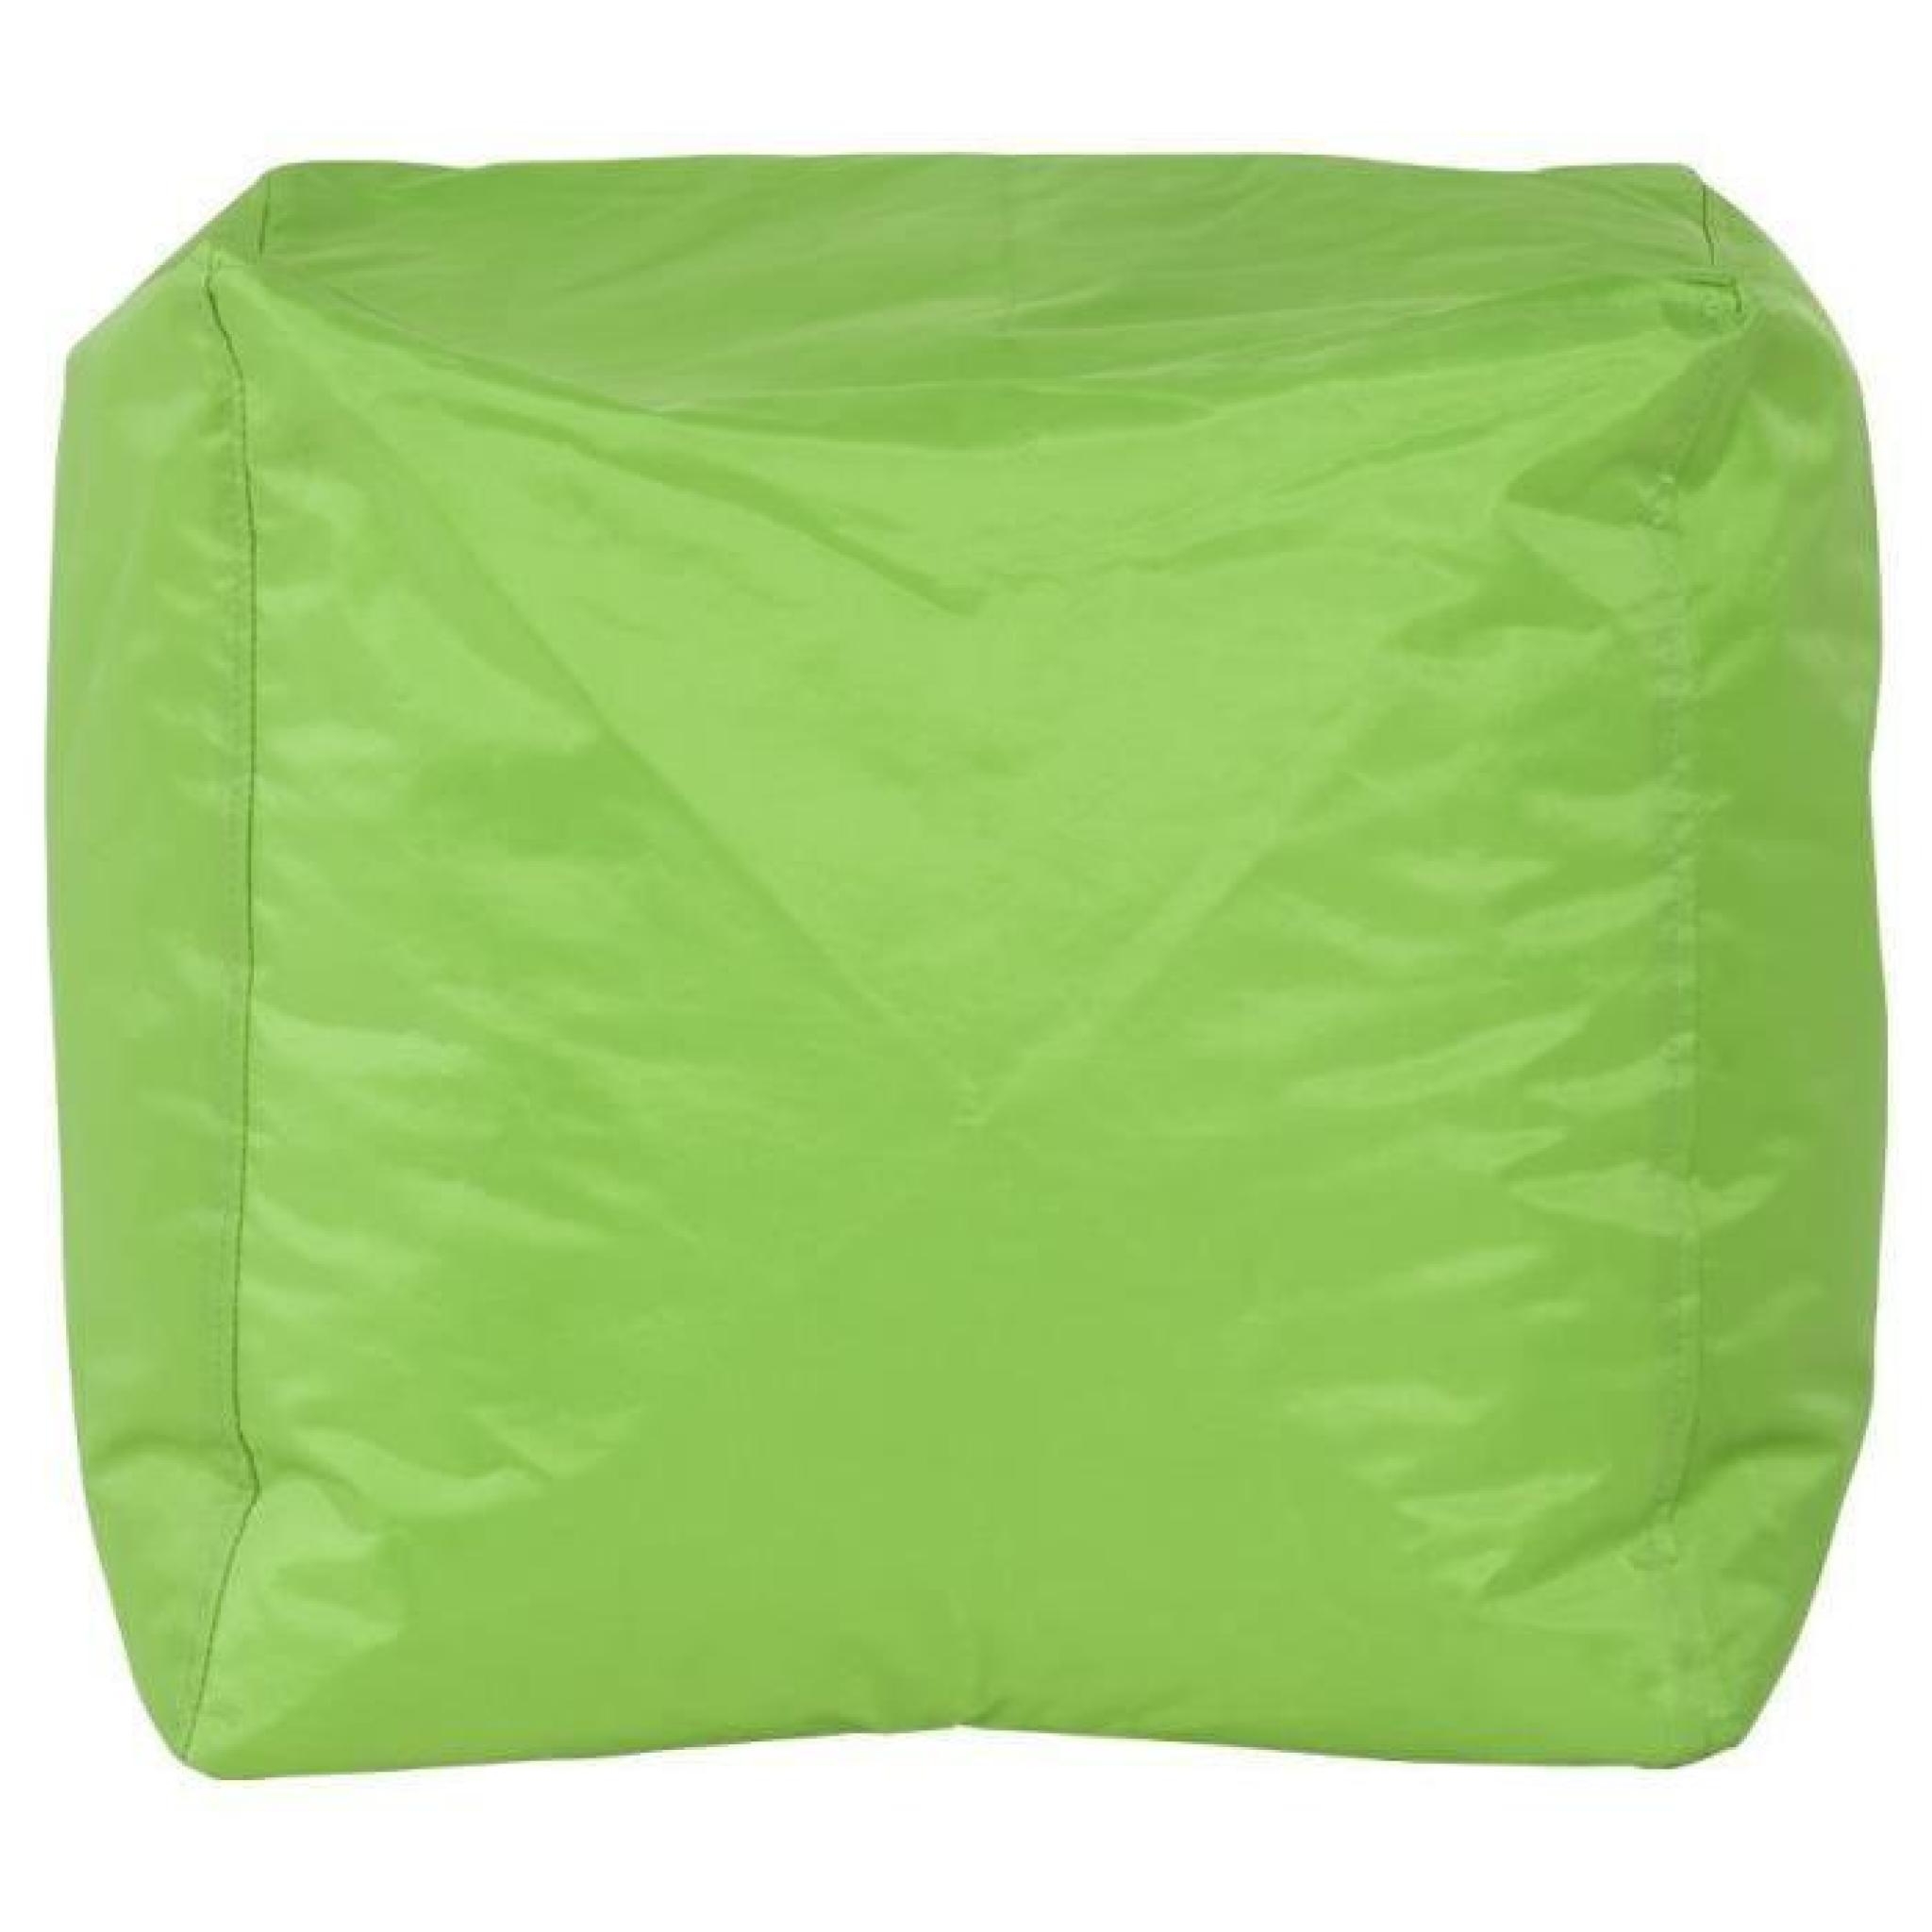 Pouf design en textile de couleur verte LS00560GE pas cher